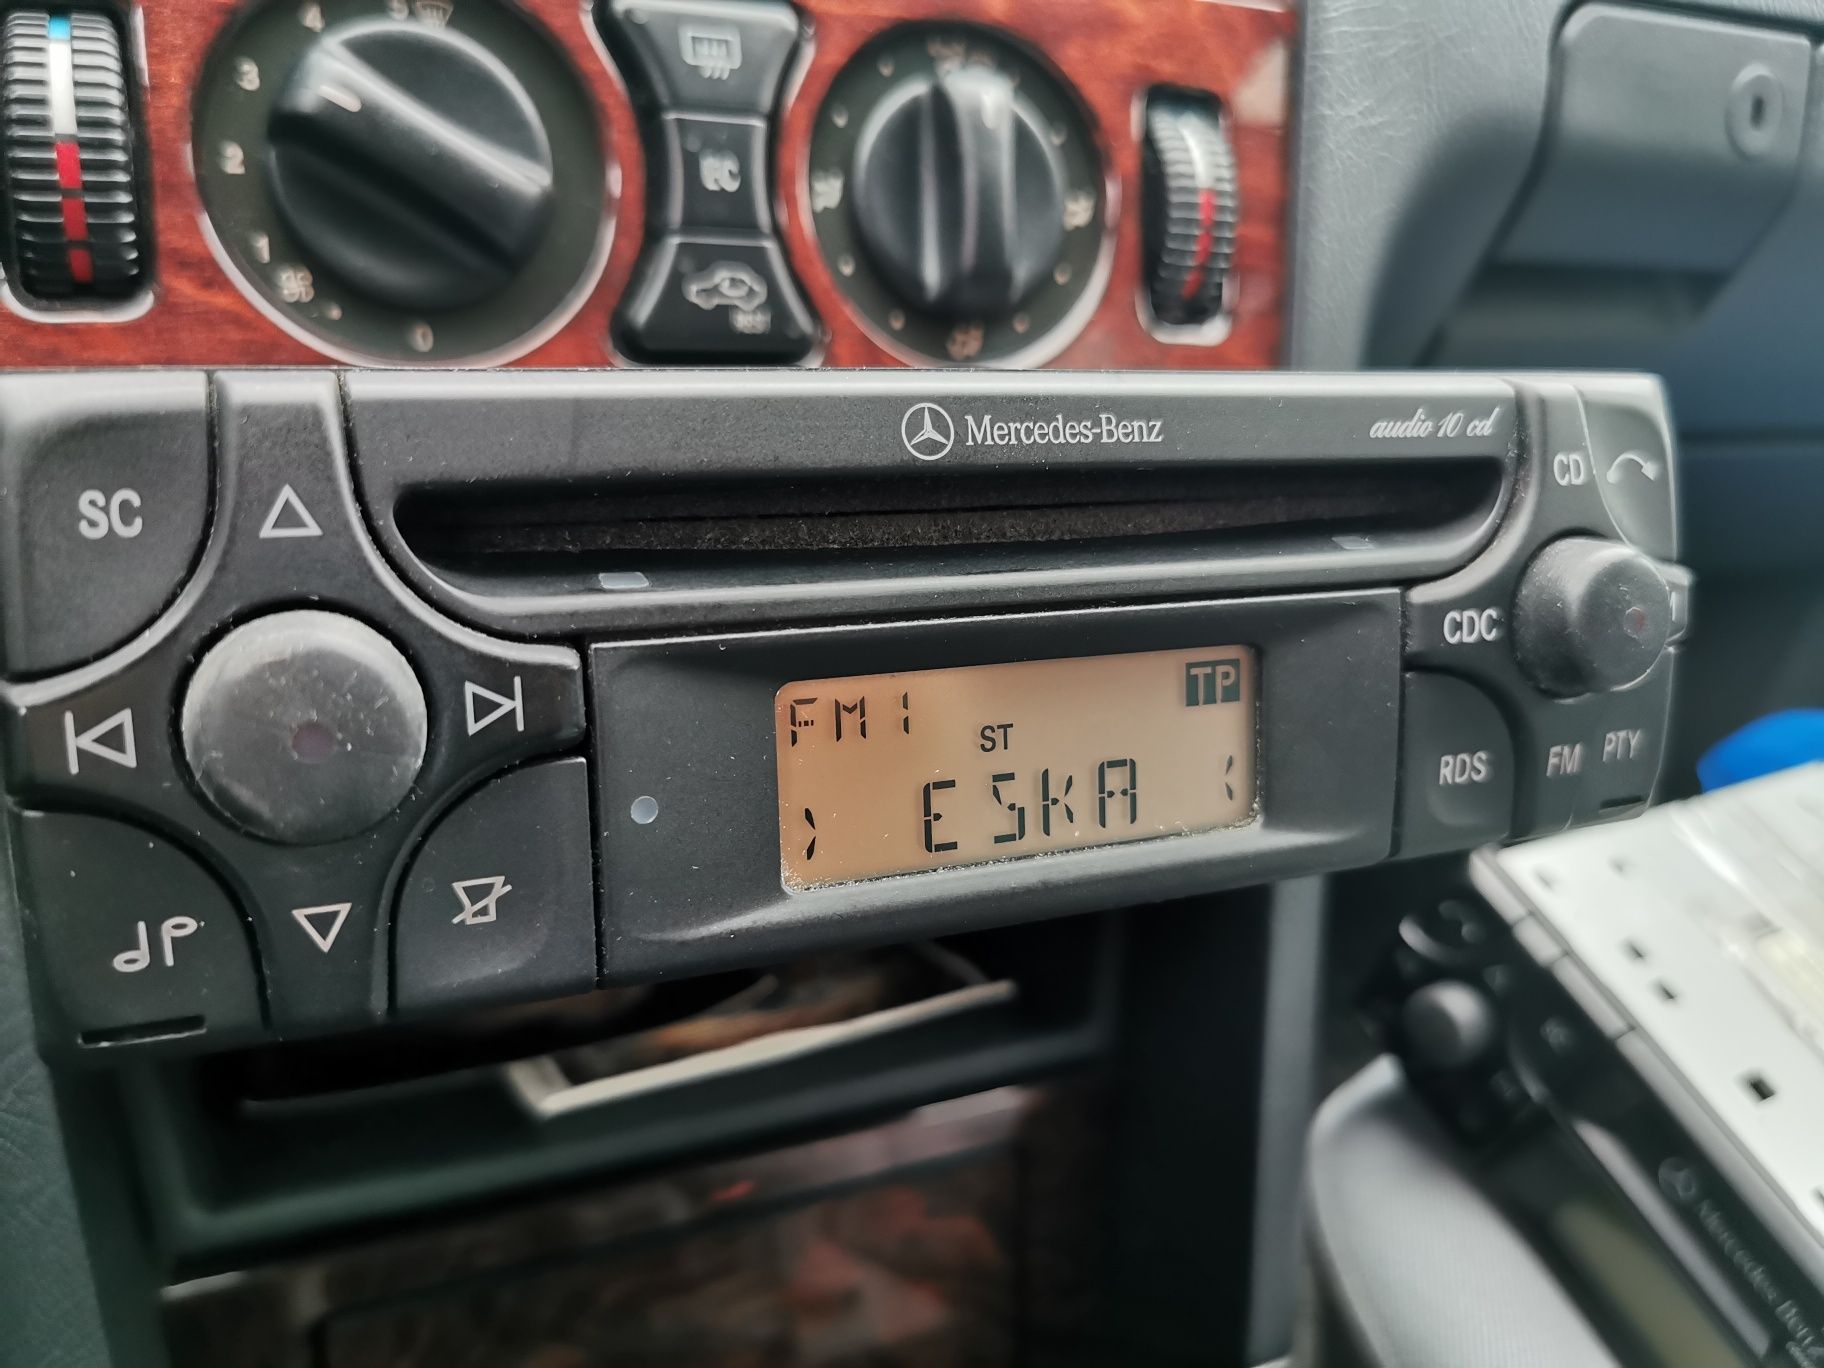 Radio Mercedes audio CD 10 w202 w210 w124 e klasa C klasa wysyłka